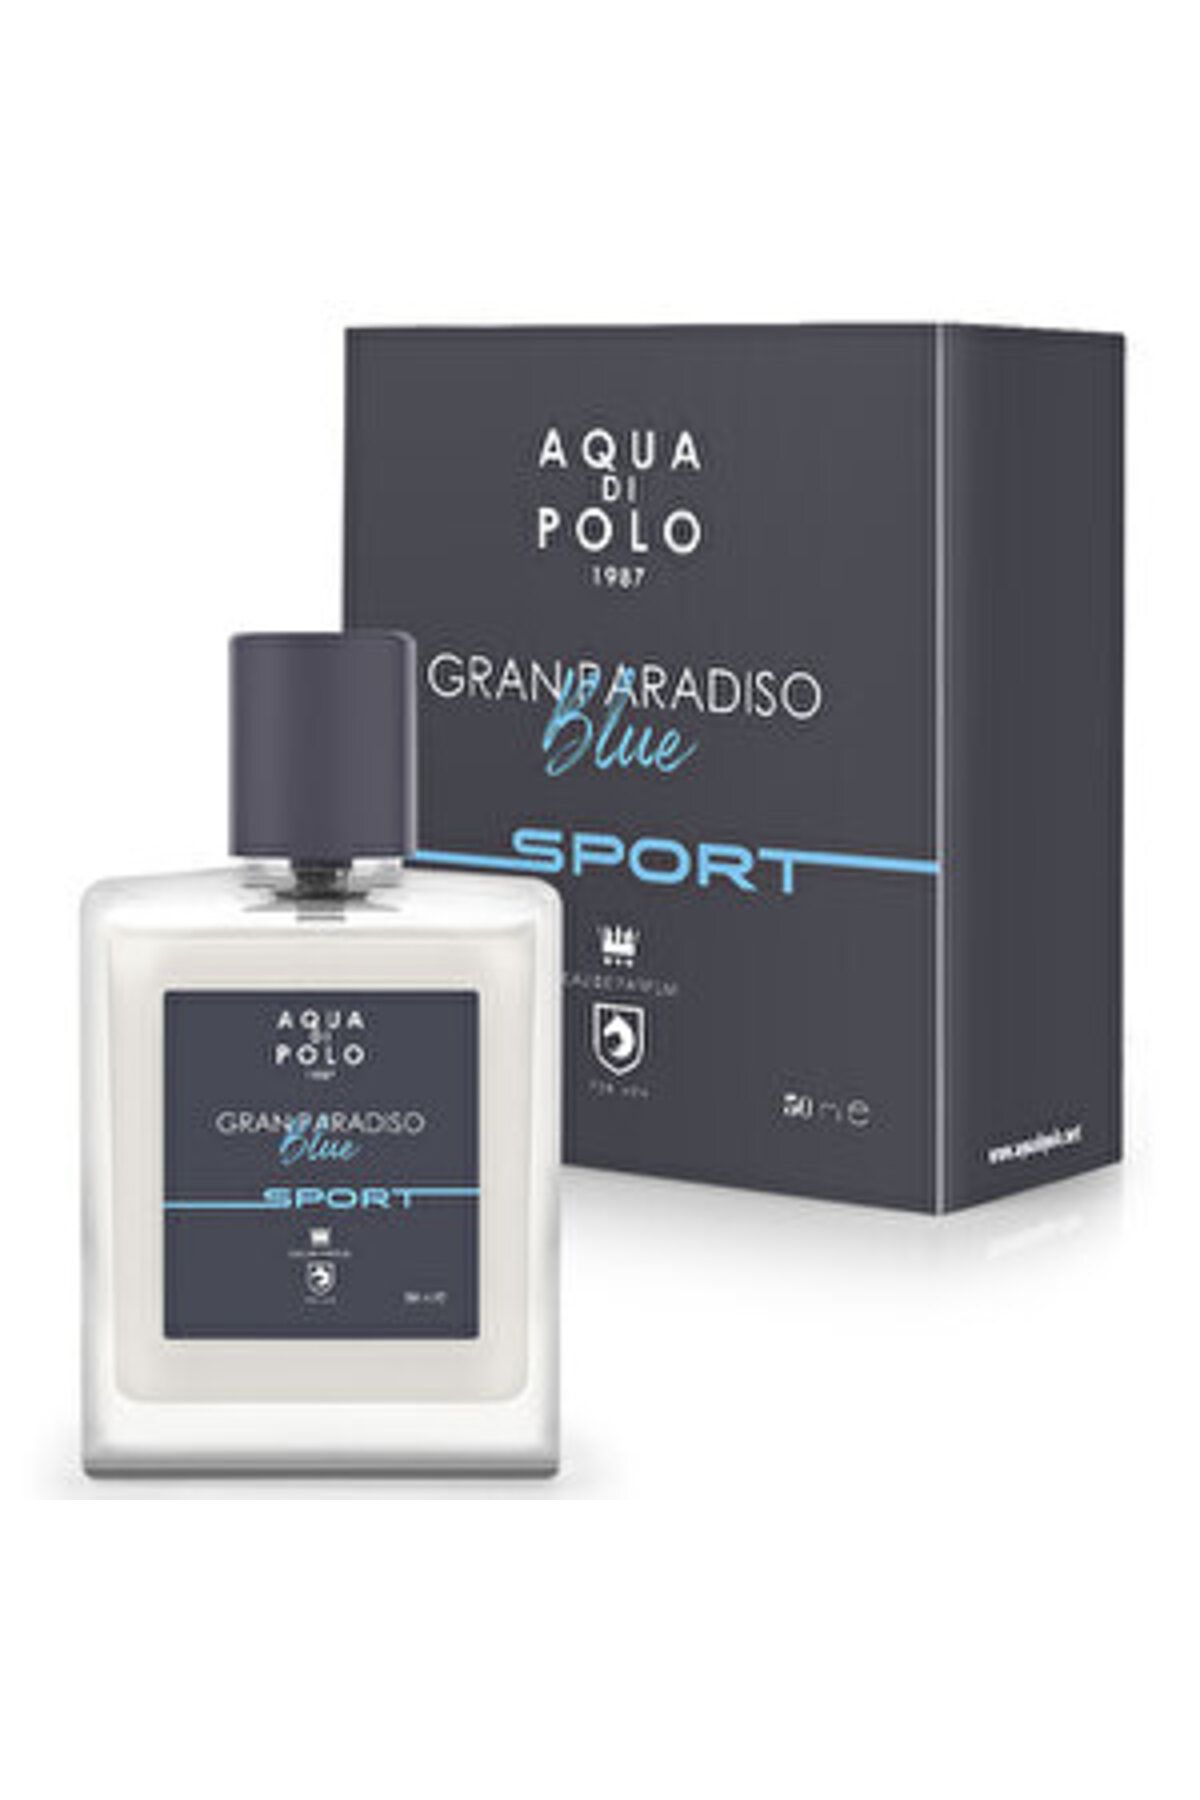 Aqua ( 1 ADET ) Aqua di Polo 1987 Gran Paradiso Blue Sport EDP Erkek Parfüm 50 ml